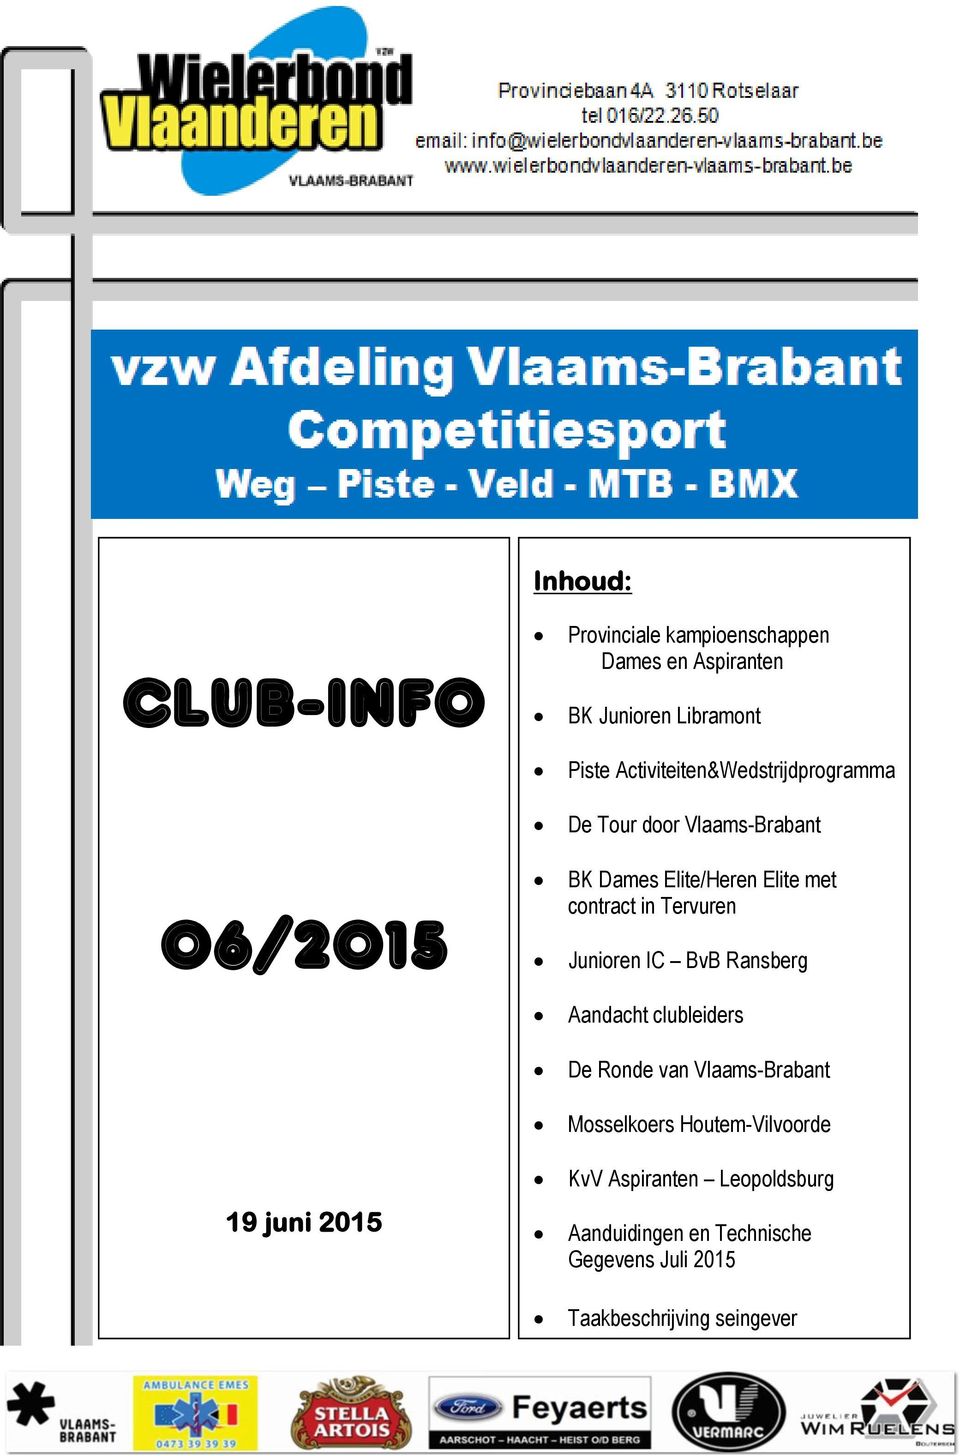 contract in Tervuren Junioren IC BvB Ransberg Aandacht clubleiders De Ronde van Vlaams-Brabant Mosselkoers